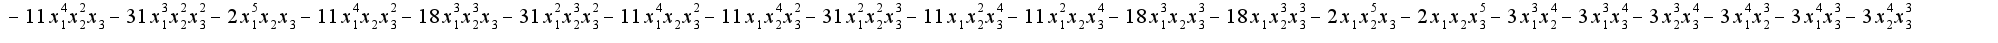 $-11x^4_1x^2_2x_3-31x^3_1x^2_2x^2_3-2x^5_1x_2x_3-11x^4_1x_2x^2_3-18x^3_1x^3_2x_3-31x^2_1x^3_2x^2_3-11x^4_1x_2x^2_3-11 x_1x^4_2x^2_3-31 x^2_1x^2_2x^3_3-11x_1x^2_2x^4_3-11x^2_1x_2x^4_3-18 x^3_1x_2x^3_3-18 x_1x^3_2x^3_3-2x_1x^5_2x_3-2x_1x_2x^5_3-3x^3_1x^4_2-3x^3_1x^4_3-3x^3_2x^4_3-3 x^4_1x^3_2-3x^4_1x^3_3-3 x^4_2x^3_3$